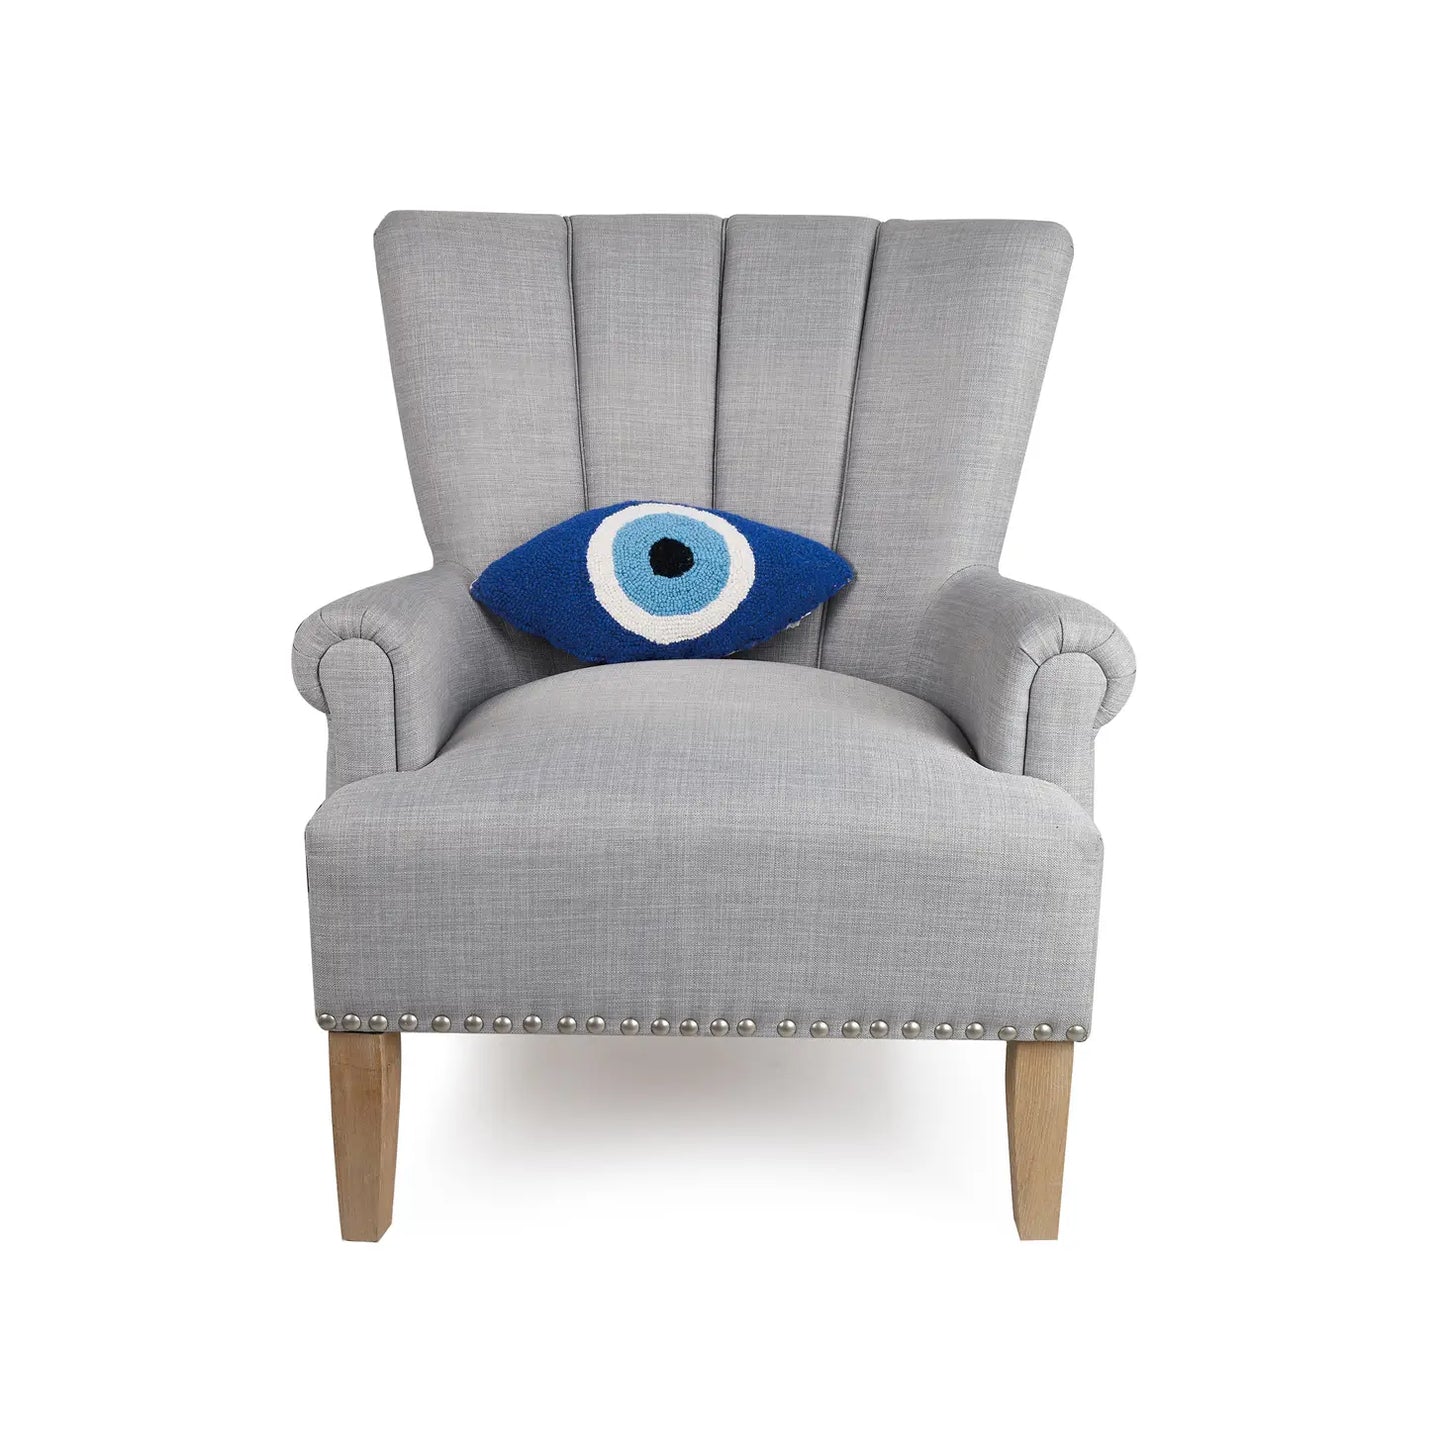 Blue Eye Cushion